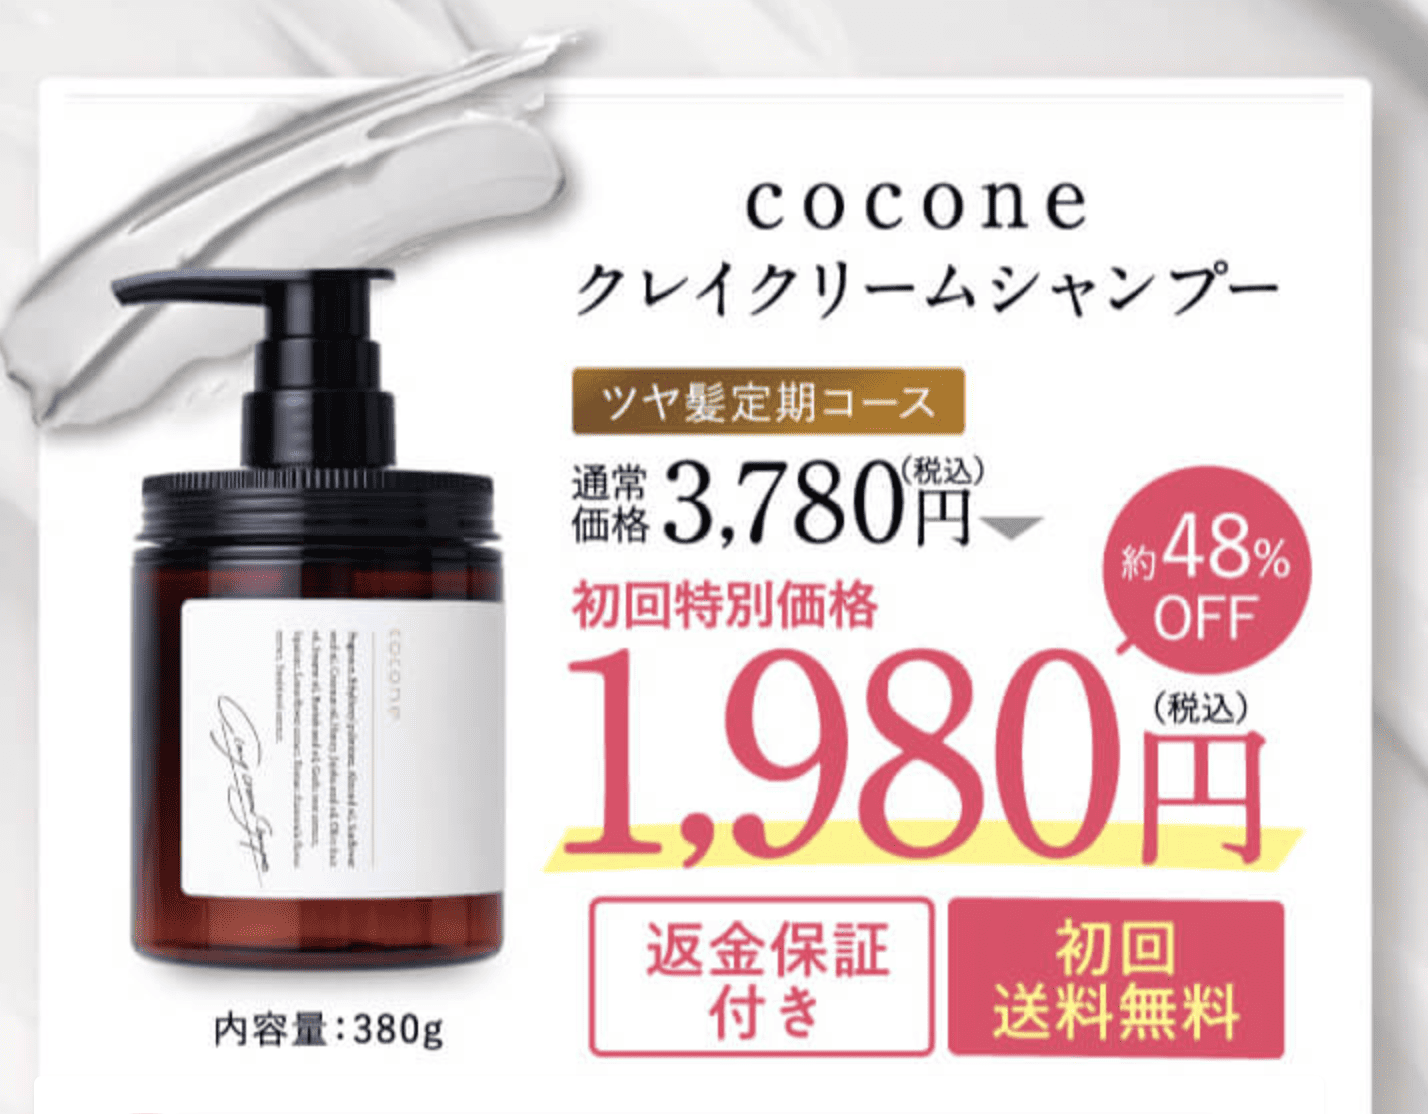 cocone クレイクリームシャンプー✩500円OFFチケット付き